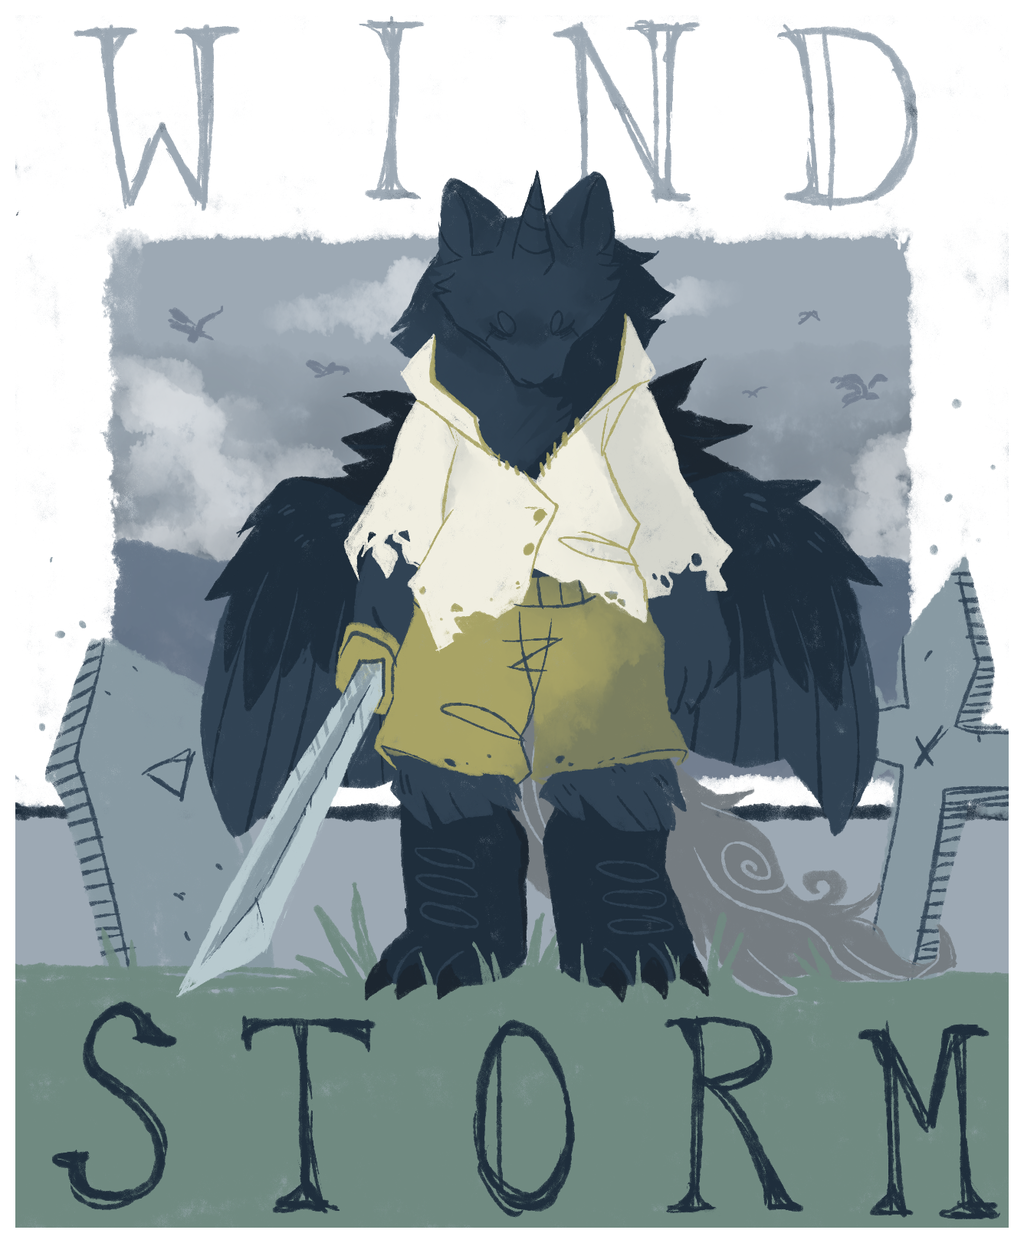 windstorm